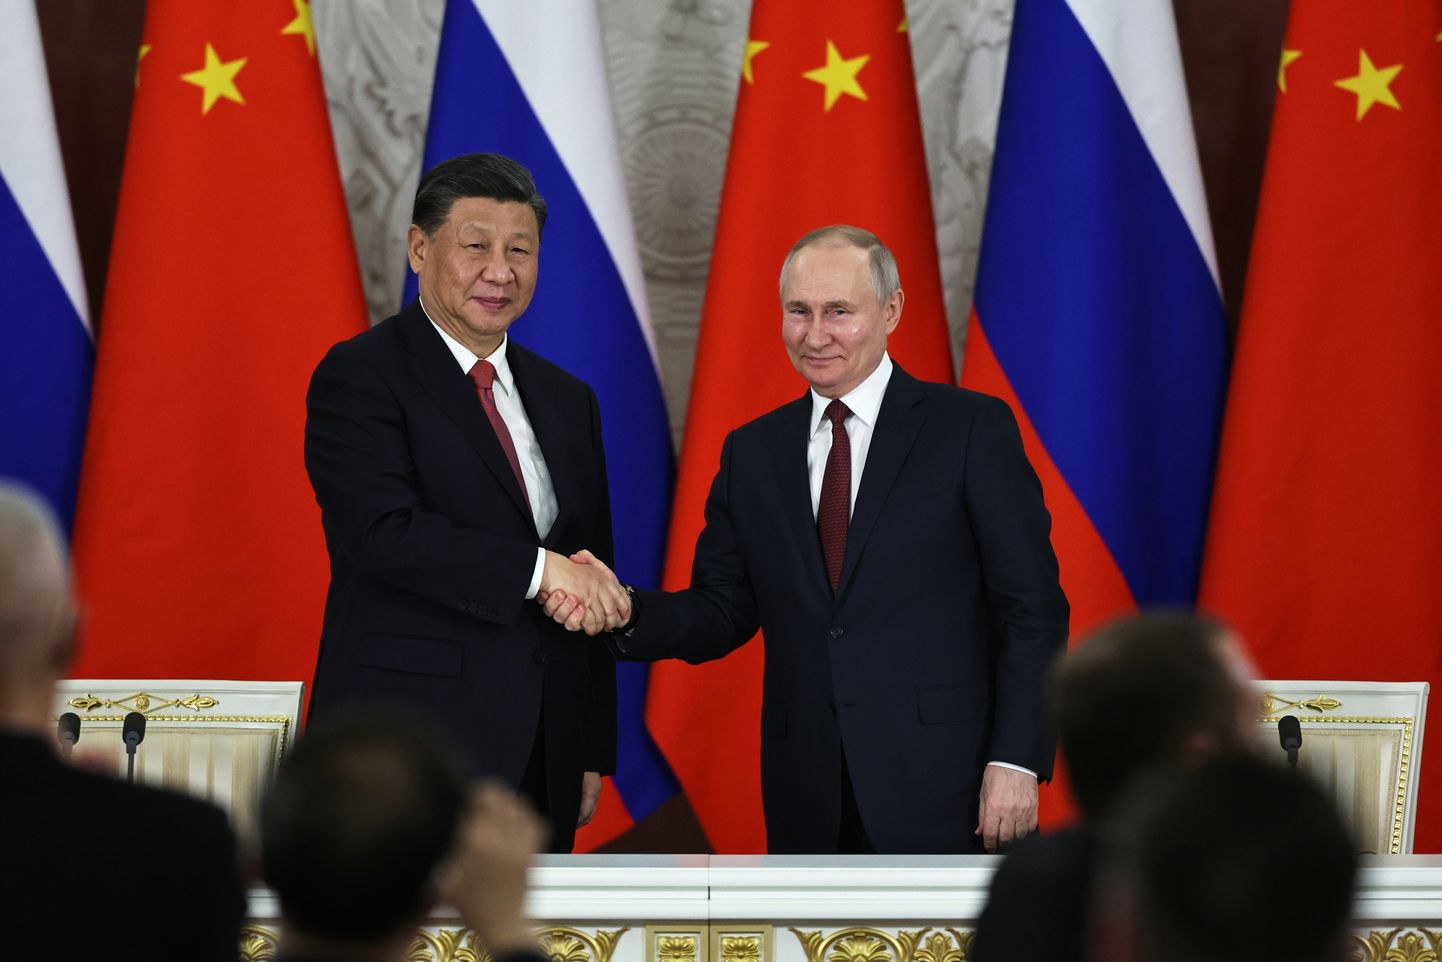 Ķīnas prezidents Sji Dzjiņpins un kara noziedznieks Vladimirs Putins.